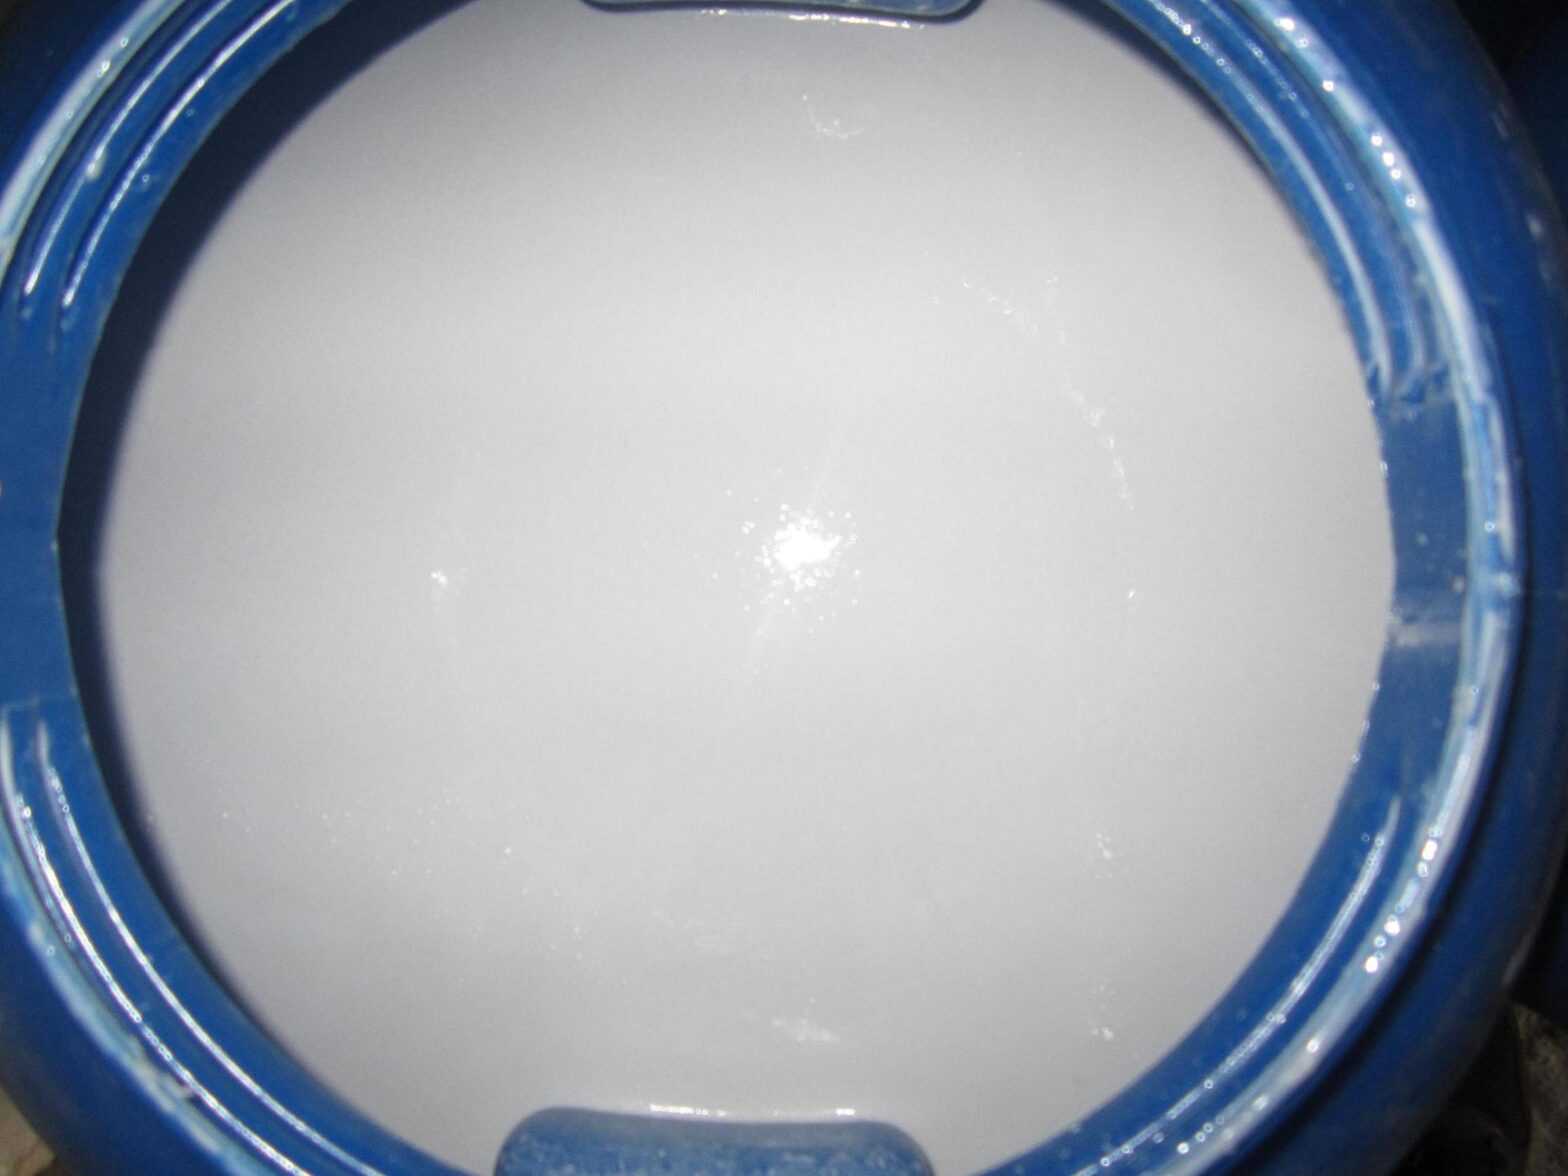 Styrene Acrylic Emulsion Polymers Market